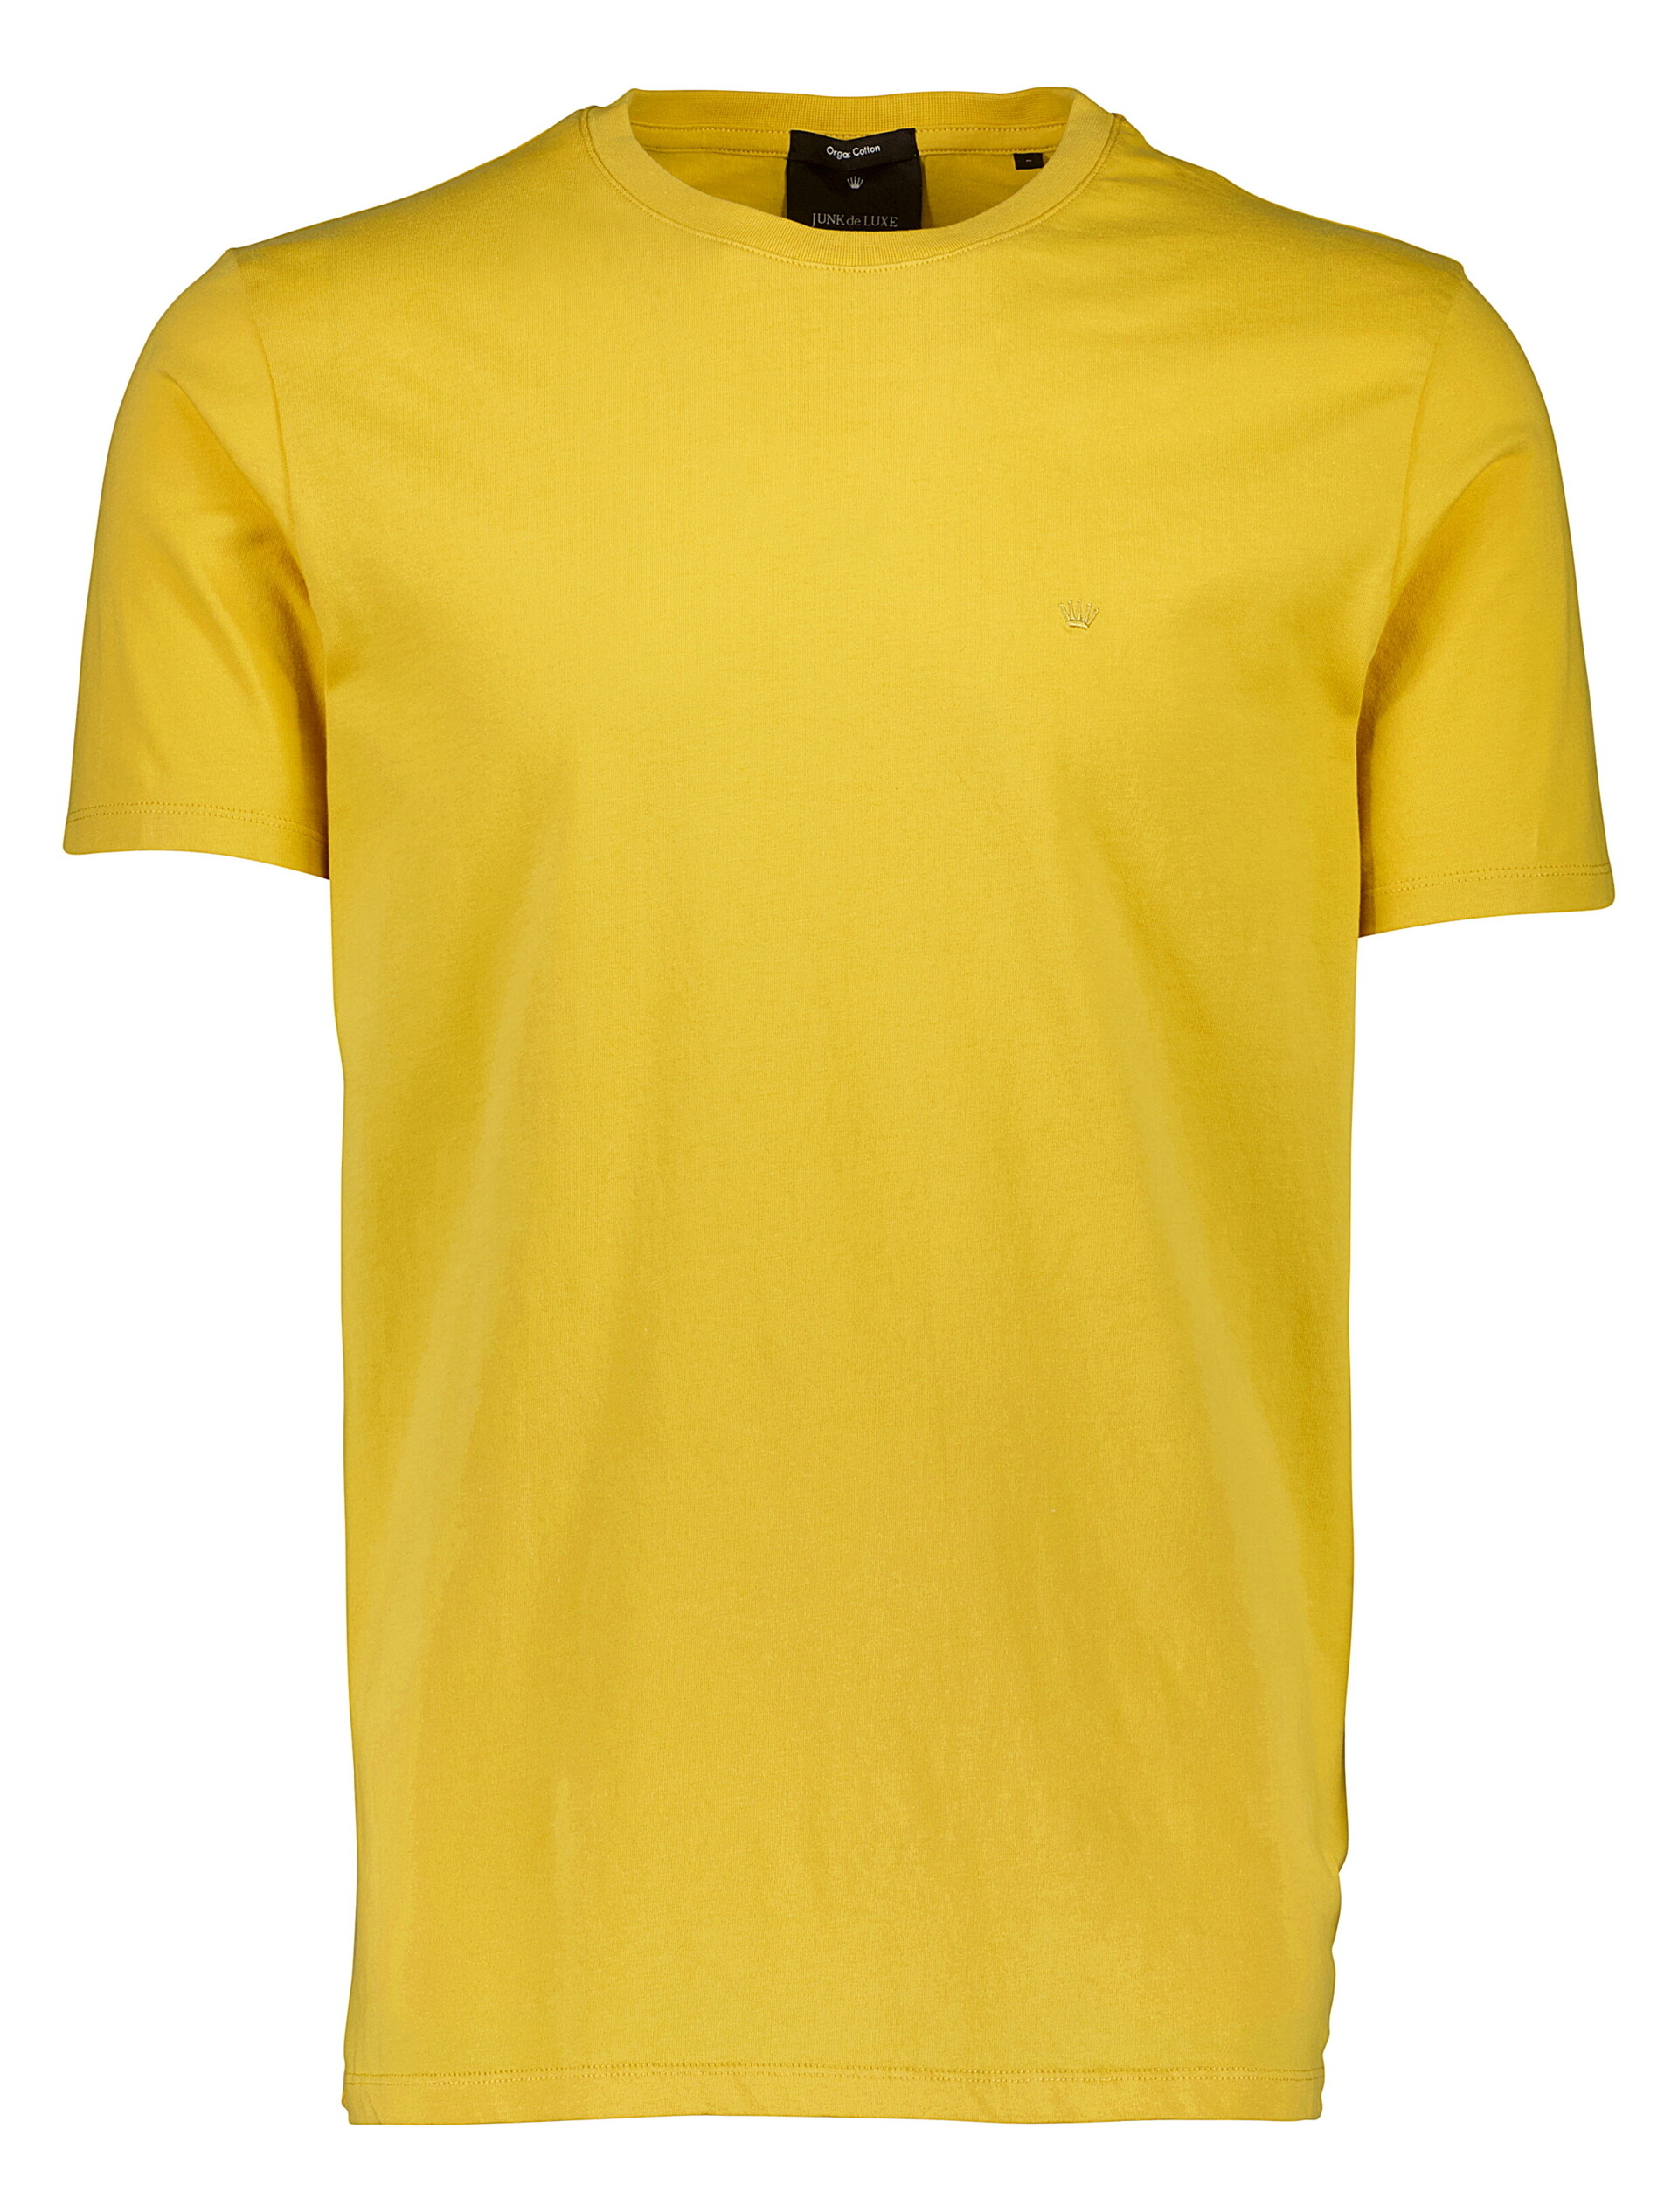 Junk de Luxe T-shirt gul / dusty yellow